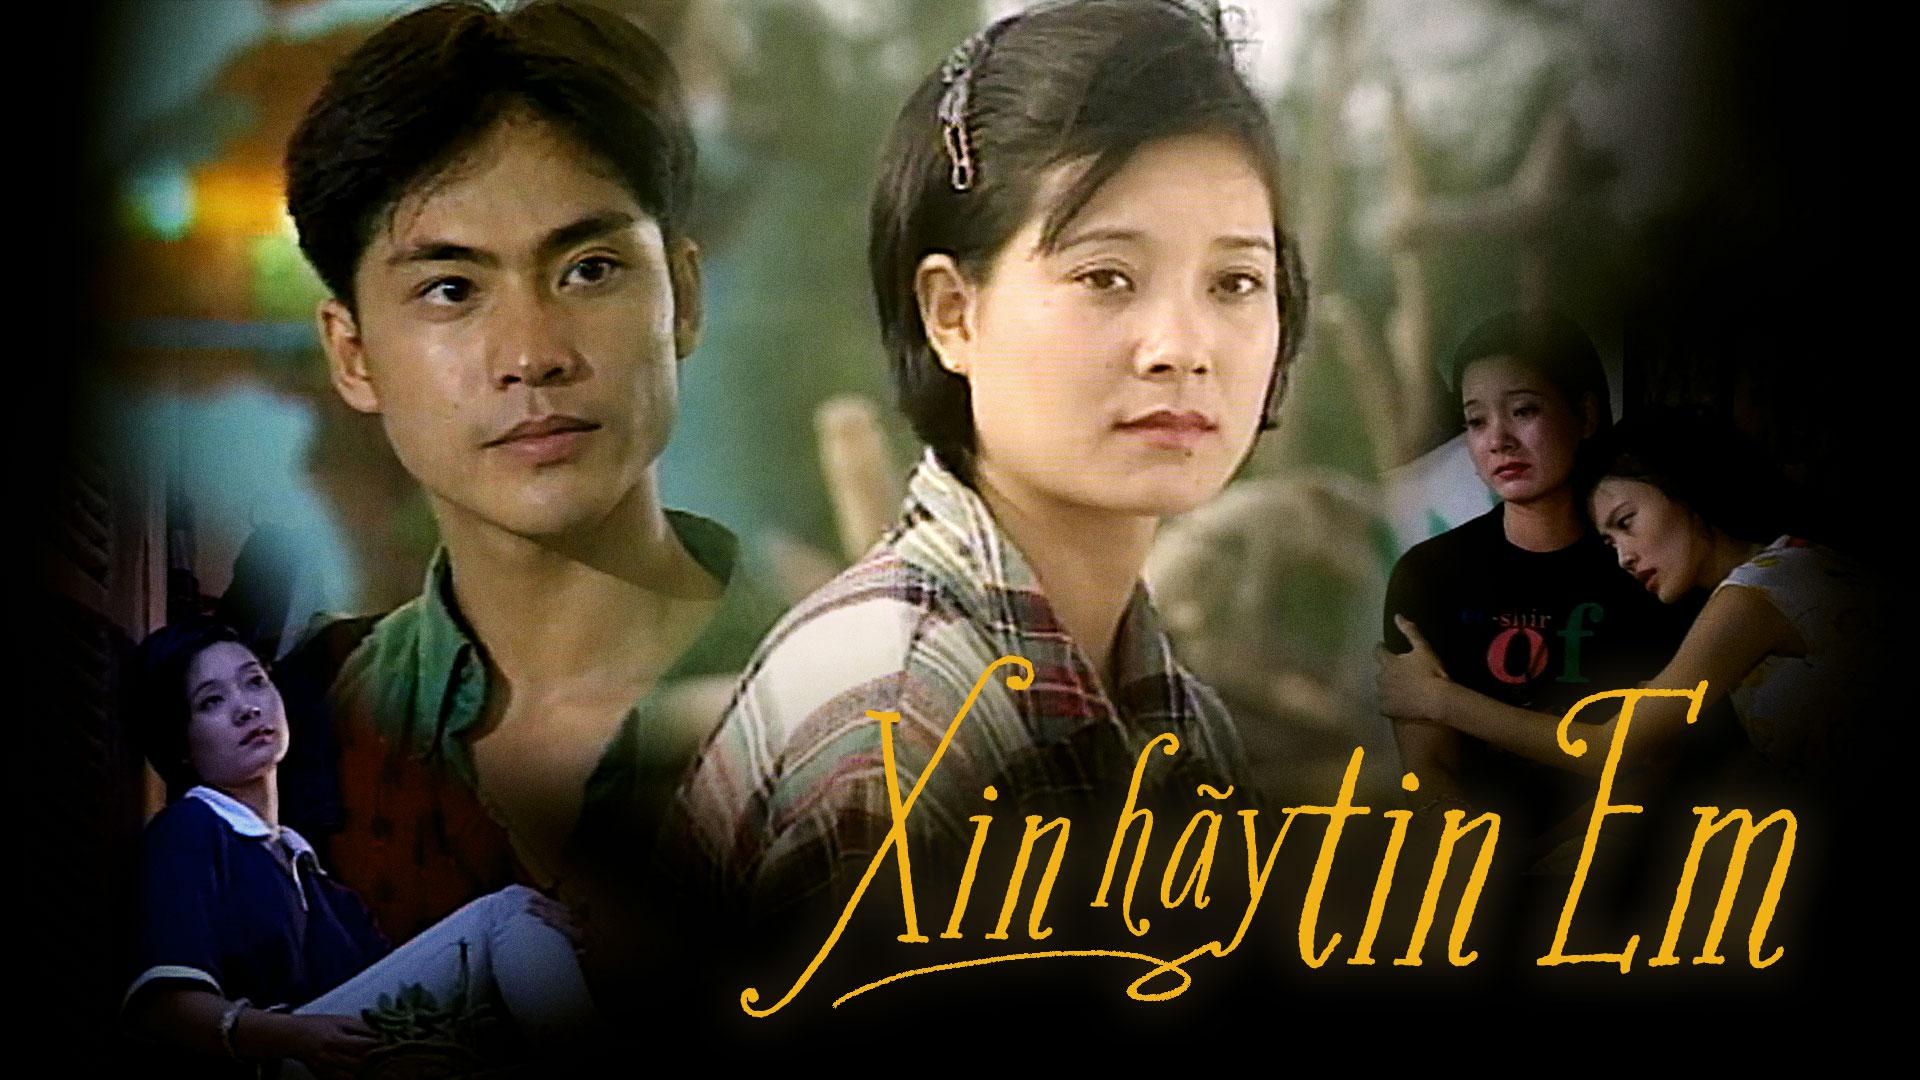 3 bộ phim thanh xuân vườn trường từng làm nên cơn sóng phim truyền hình Việt thập niên 90 - 2000 - Ảnh 4